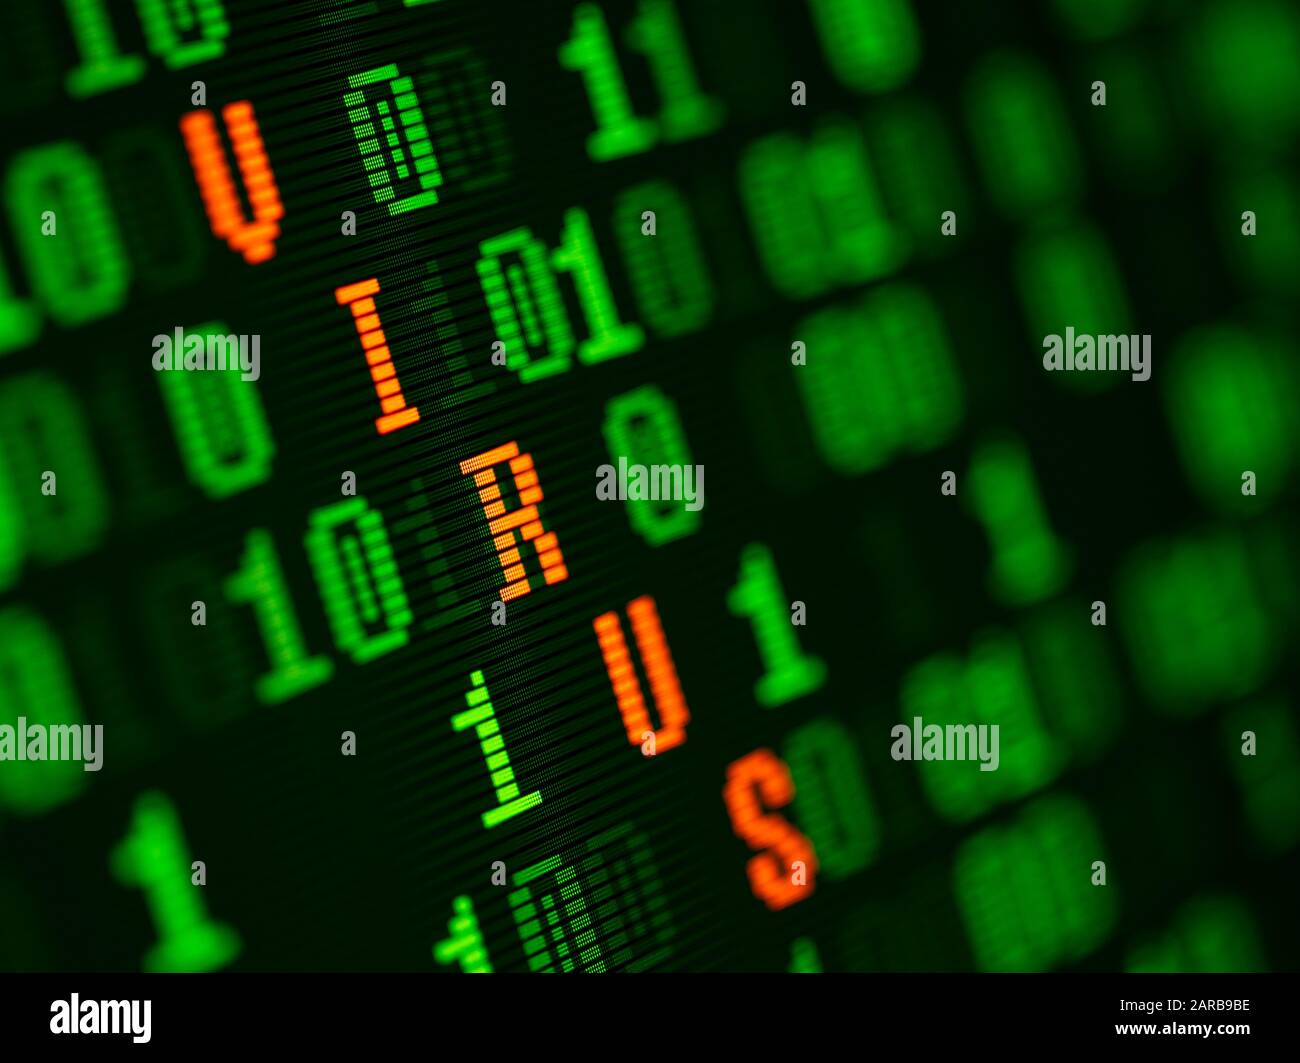 Virus trouvé dans les données binaires sur l'écran de l'ordinateur Banque D'Images